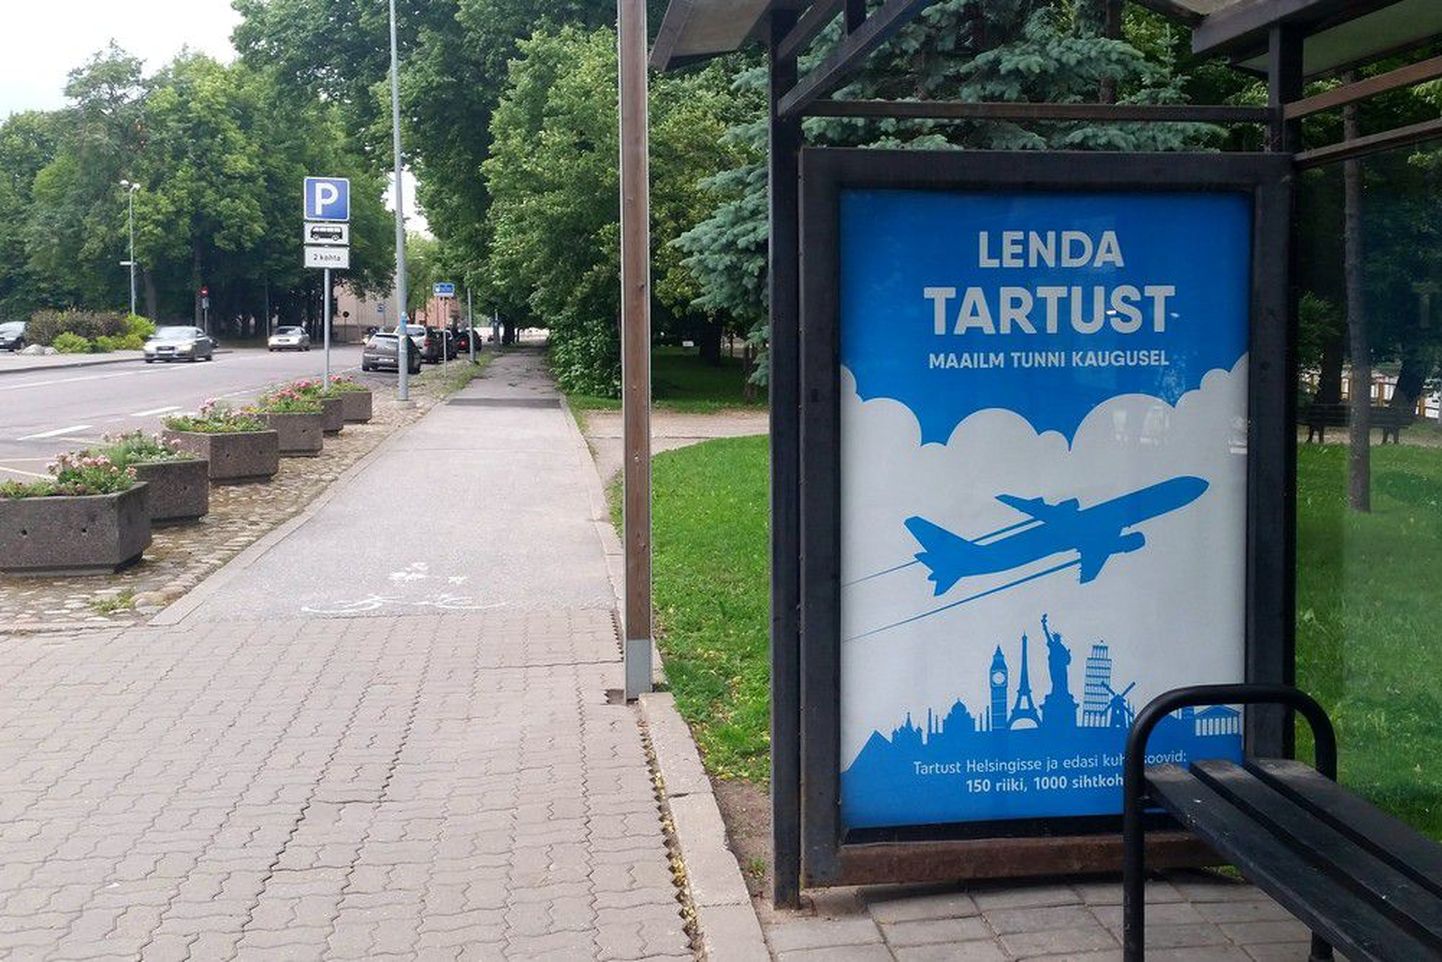 Emajõelinna bussipeatustesse ilmuvad plakatid, mis kutsuvad üles Tartust lennukiga reisima.